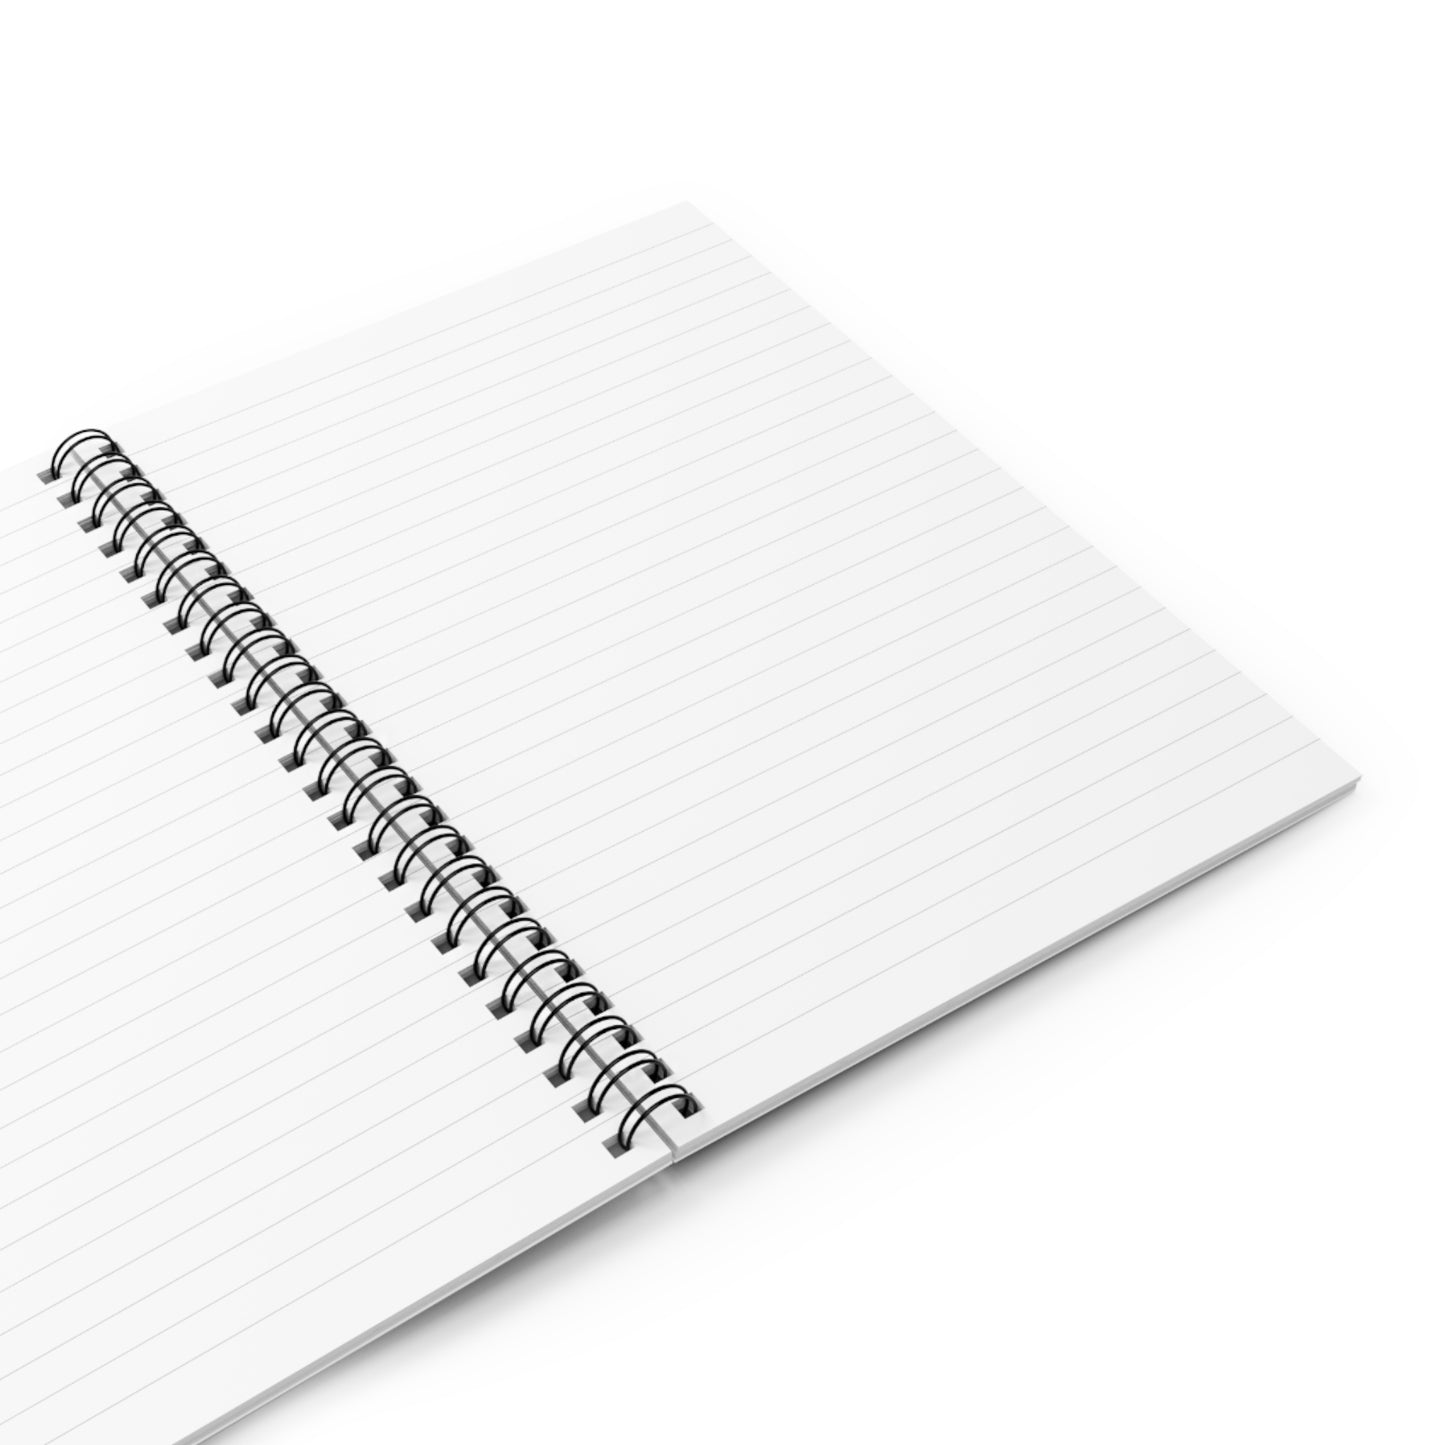 Dark Blue Turtle Journal Spiral Notebook - Ruled Line